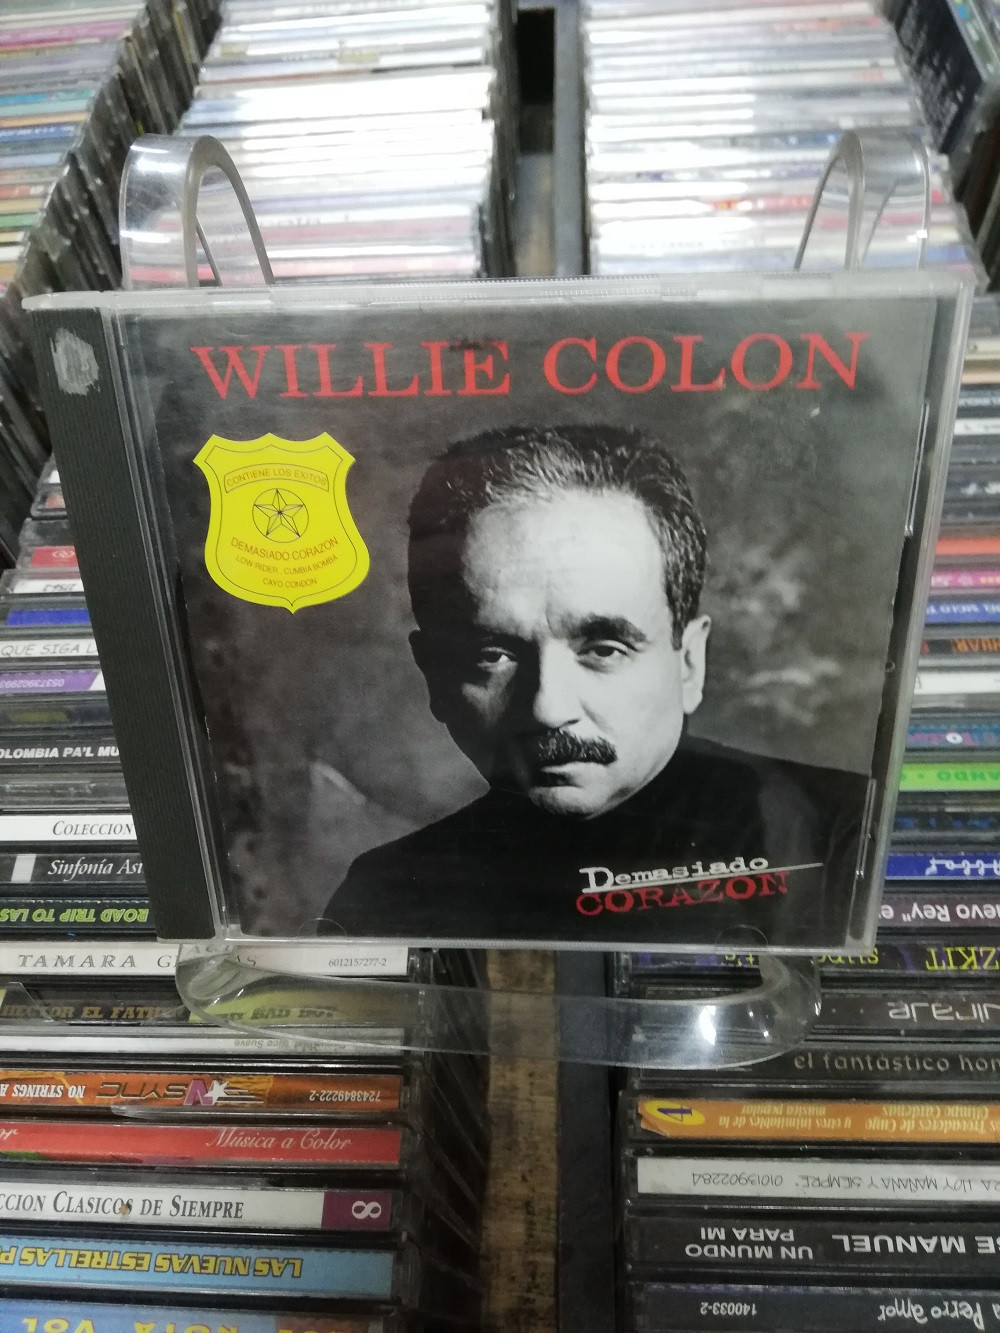 Imagen CD WILLIE COLÓN - DEMASIADO CORAZÓN 1